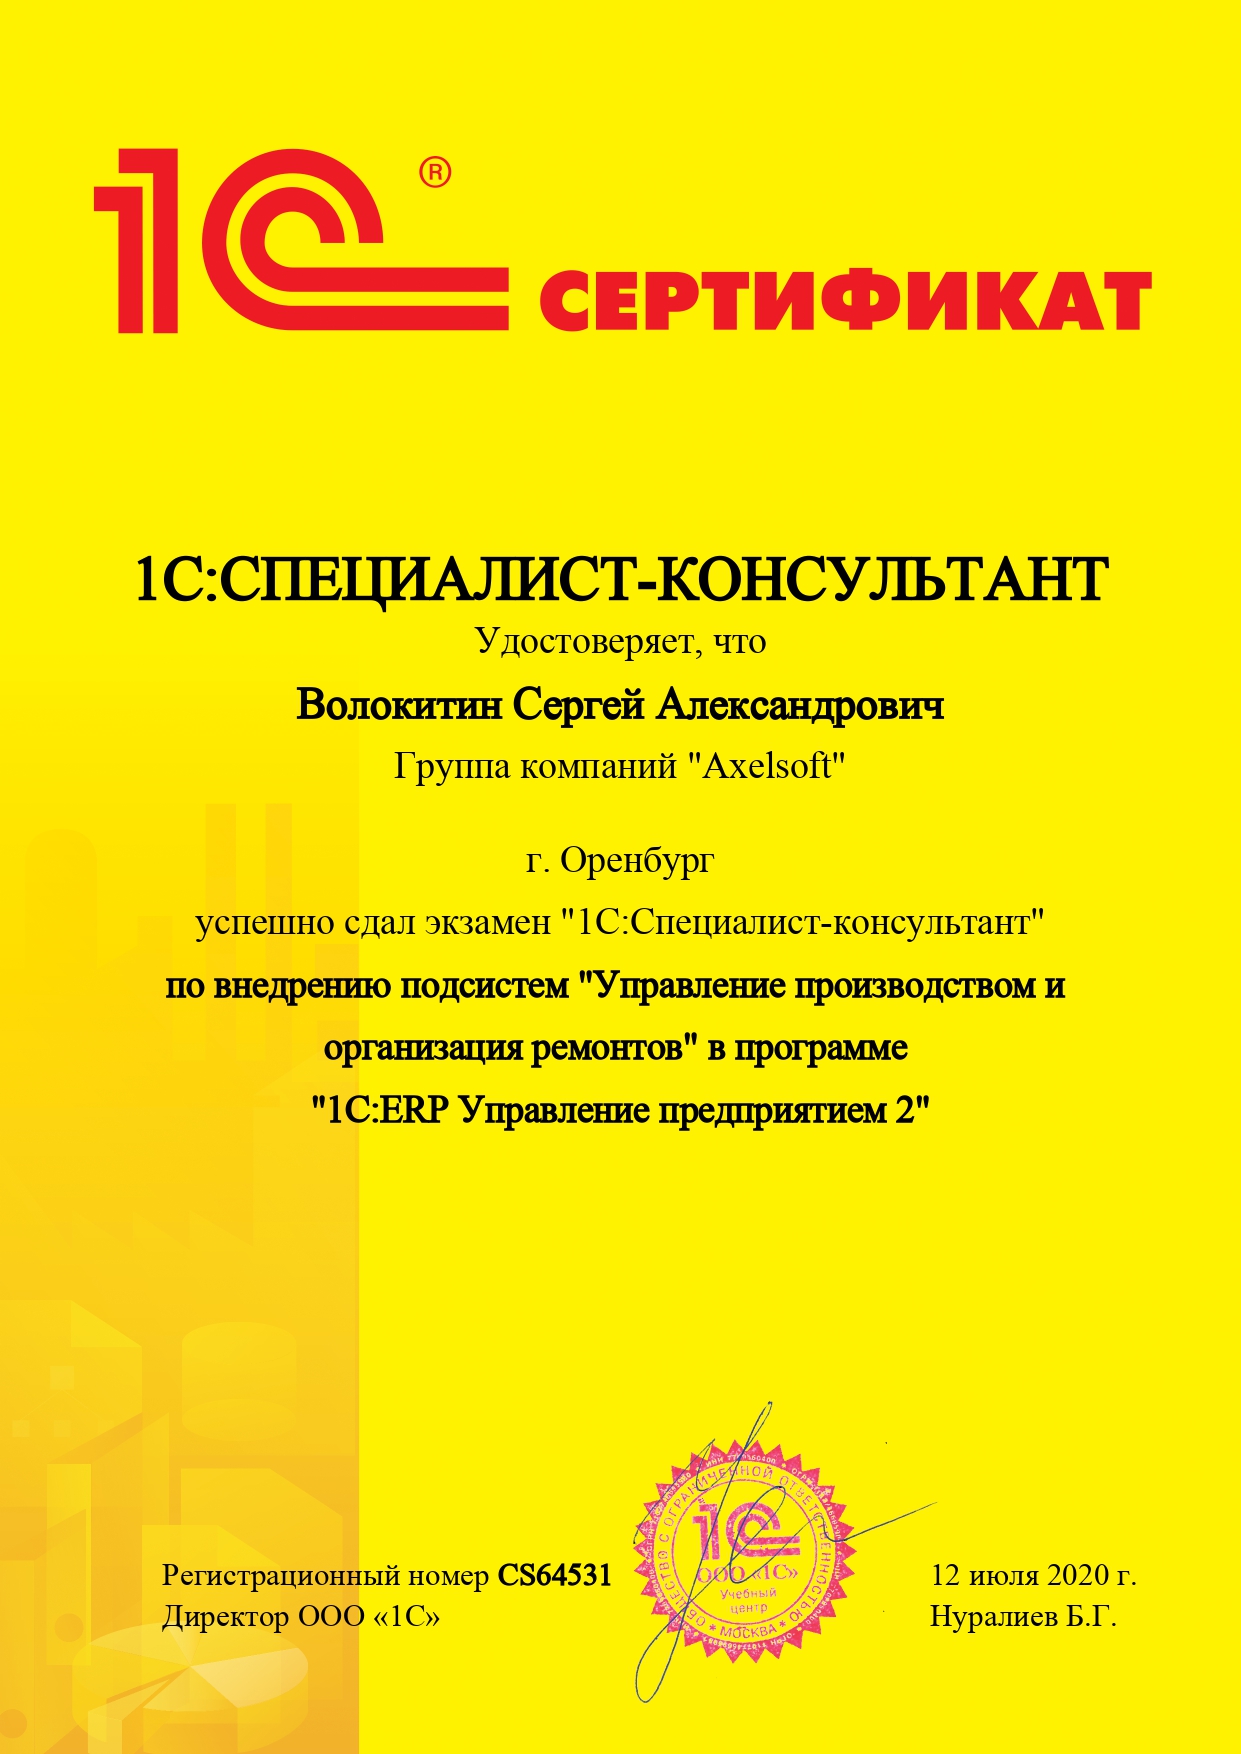 Сертификат специалиста 10